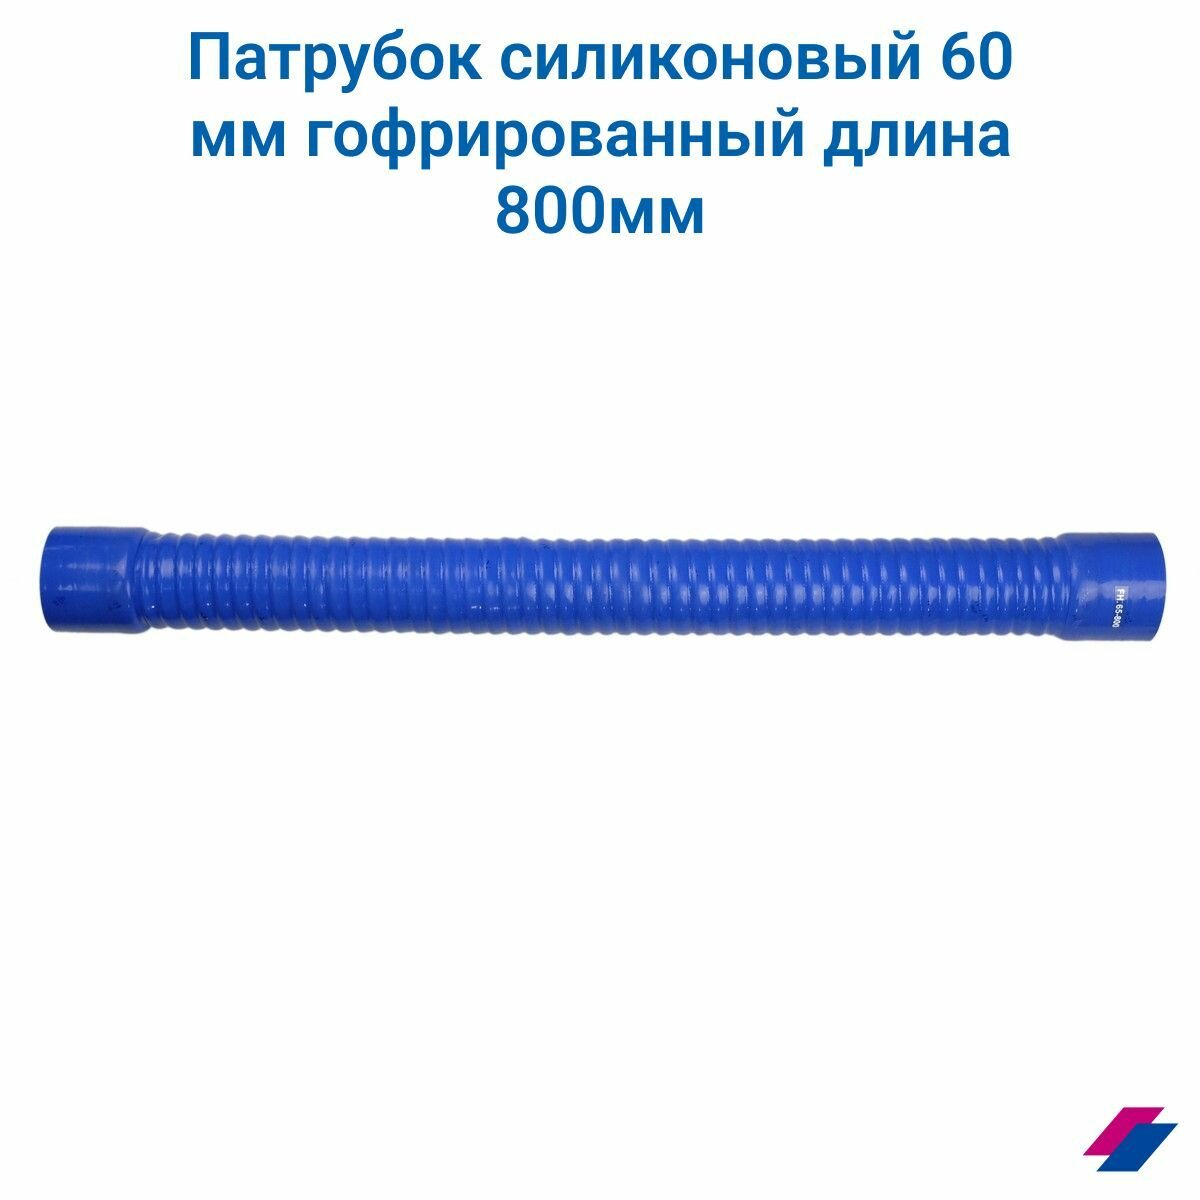 Патрубок силиконовый 60 мм гофрированный длина 800 мм